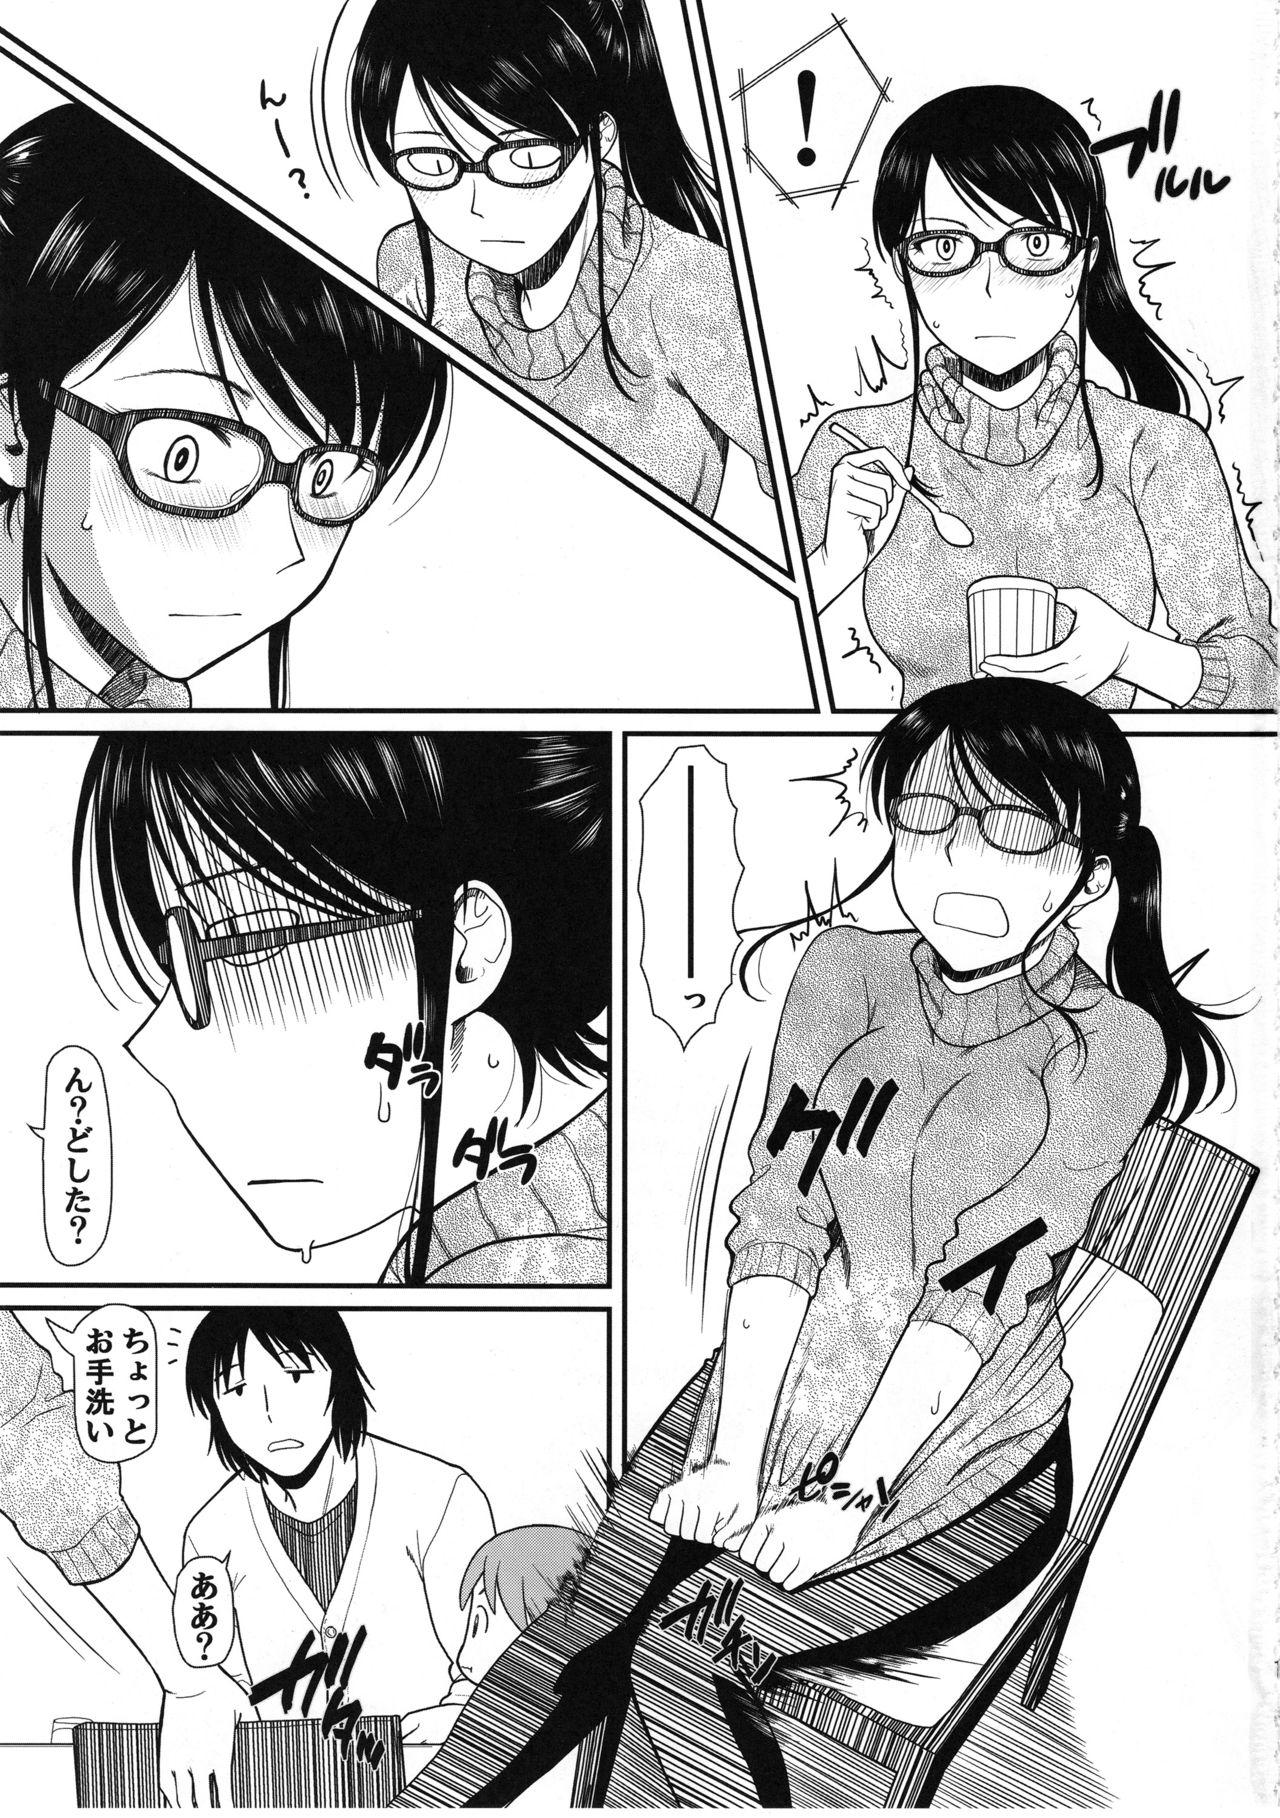 Rimming Koharuko! - Yotsubato Por - Page 2